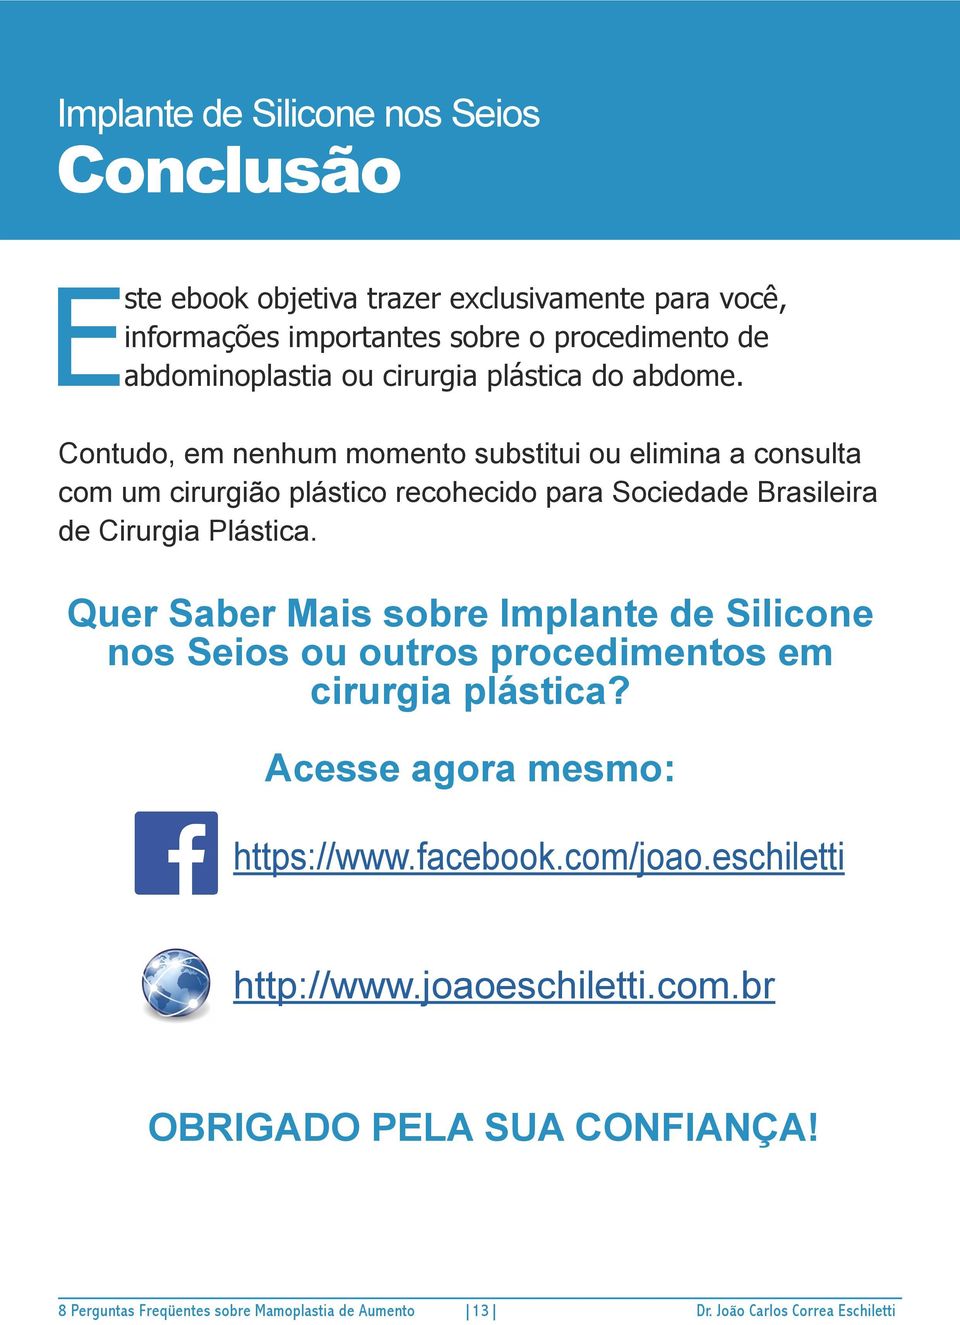 Contudo, em nenhum momento substitui ou elimina a consulta com um cirurgião plástico recohecido para Sociedade Brasileira de